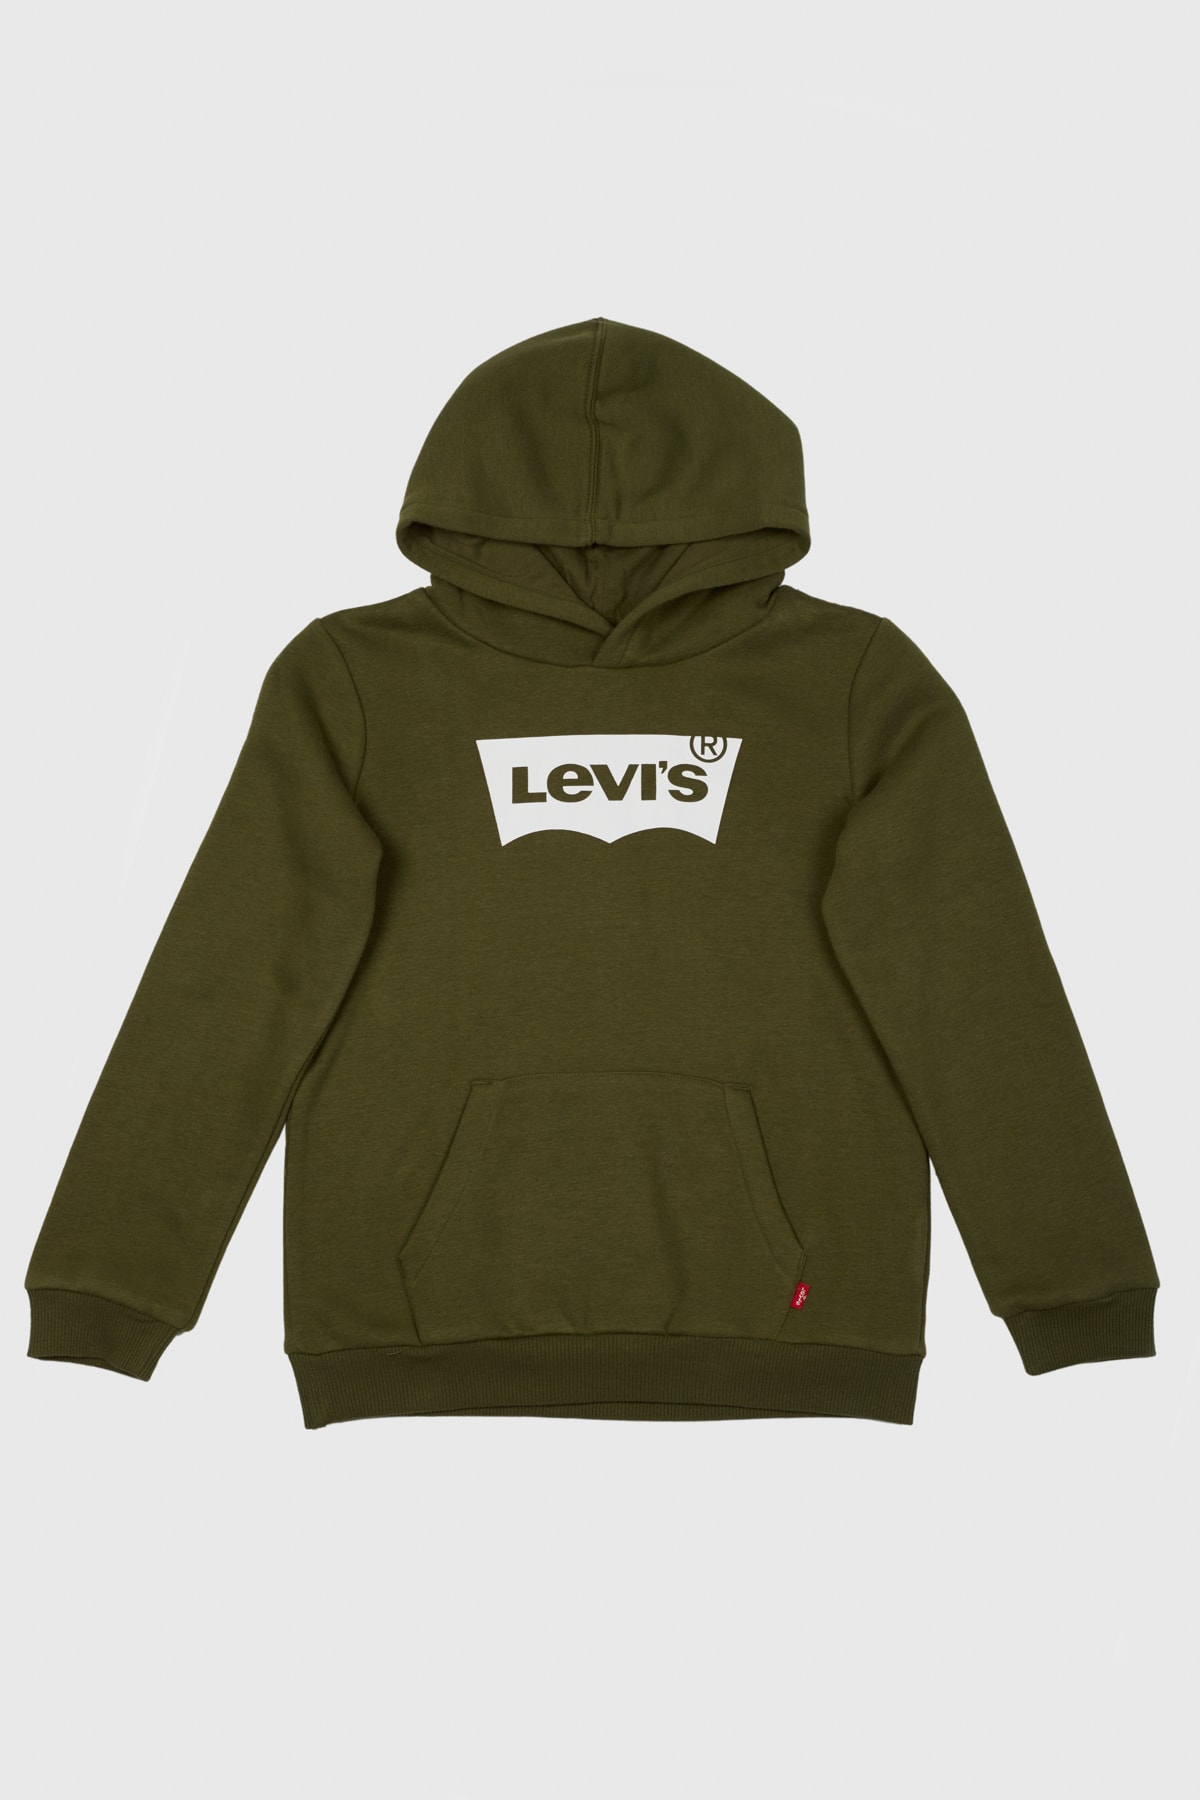 Levi's Sweatshirt Khaki Oversized Fast ausverkauft